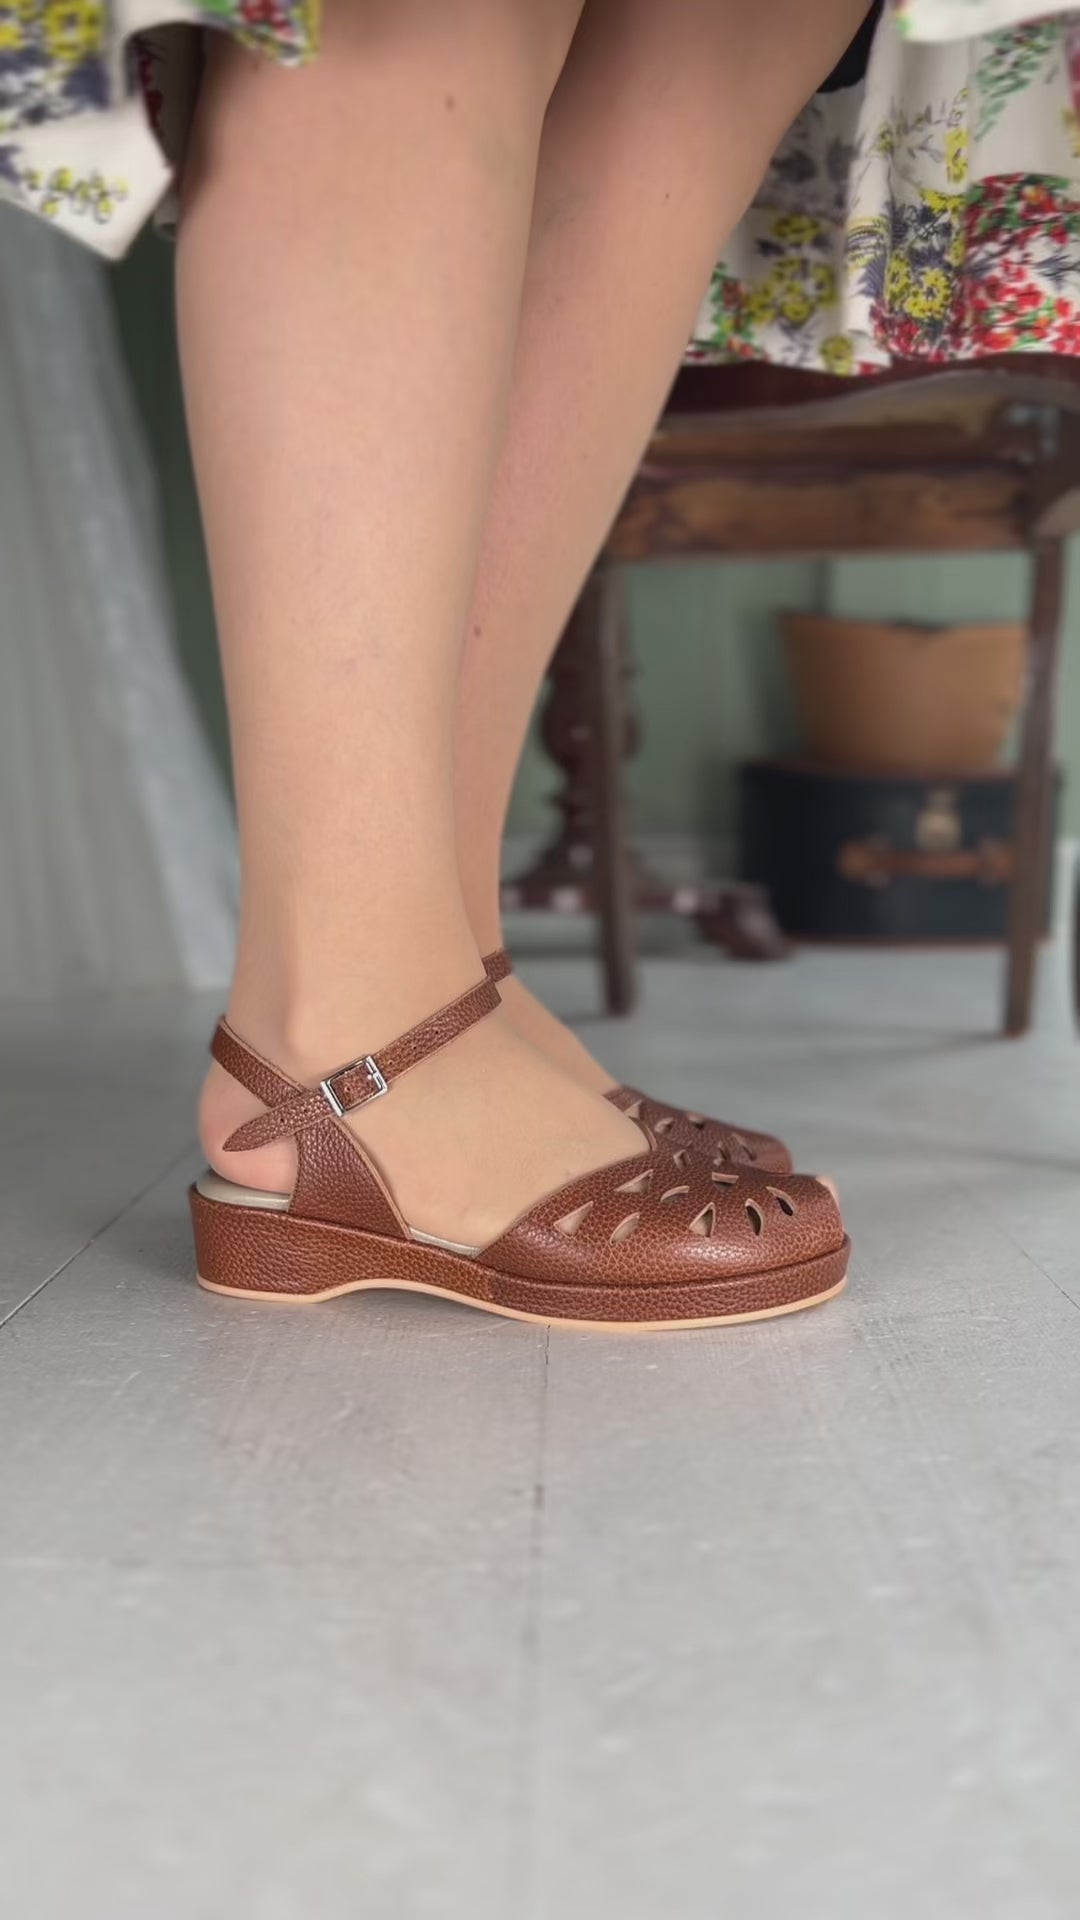 40' er / 50'er style sandal / wedge - Brun - Sidse